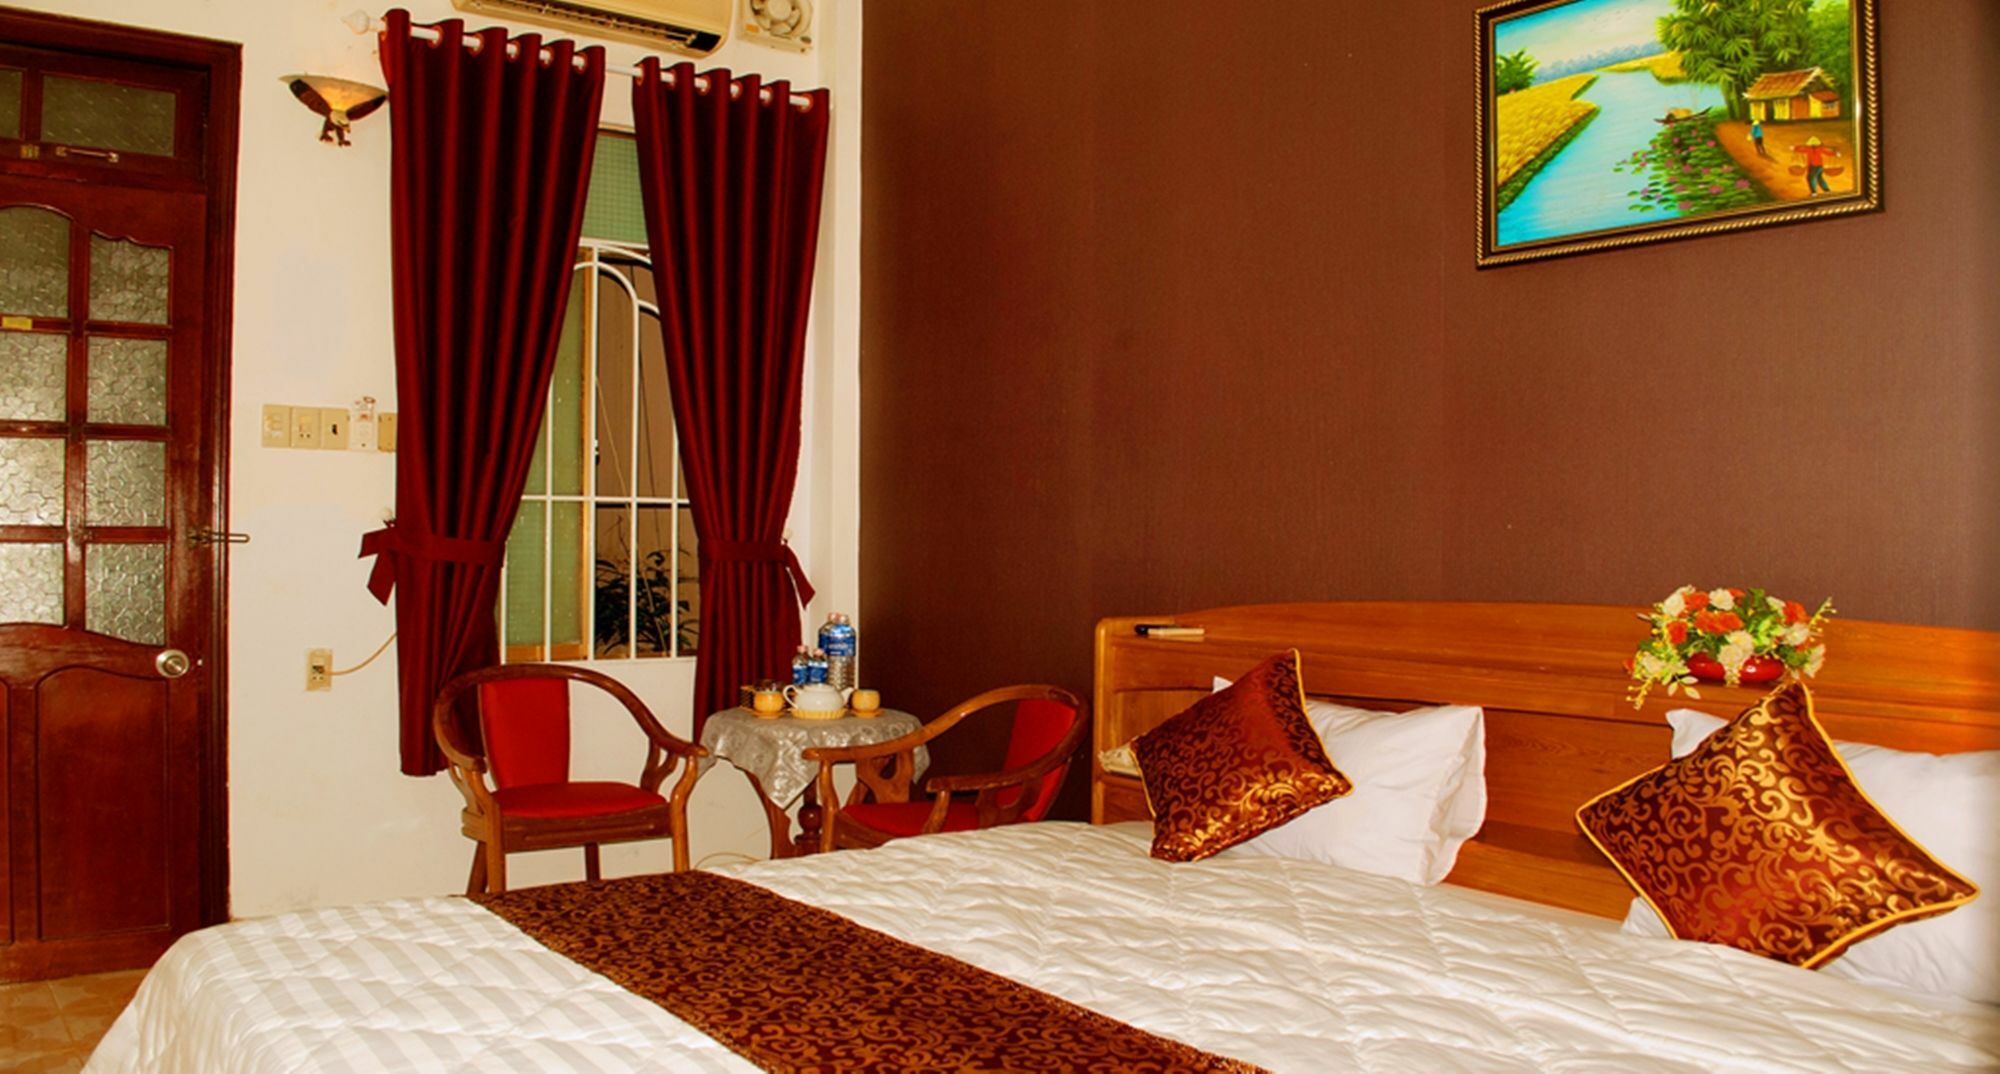 My Long Hotel Nha Trang Extérieur photo